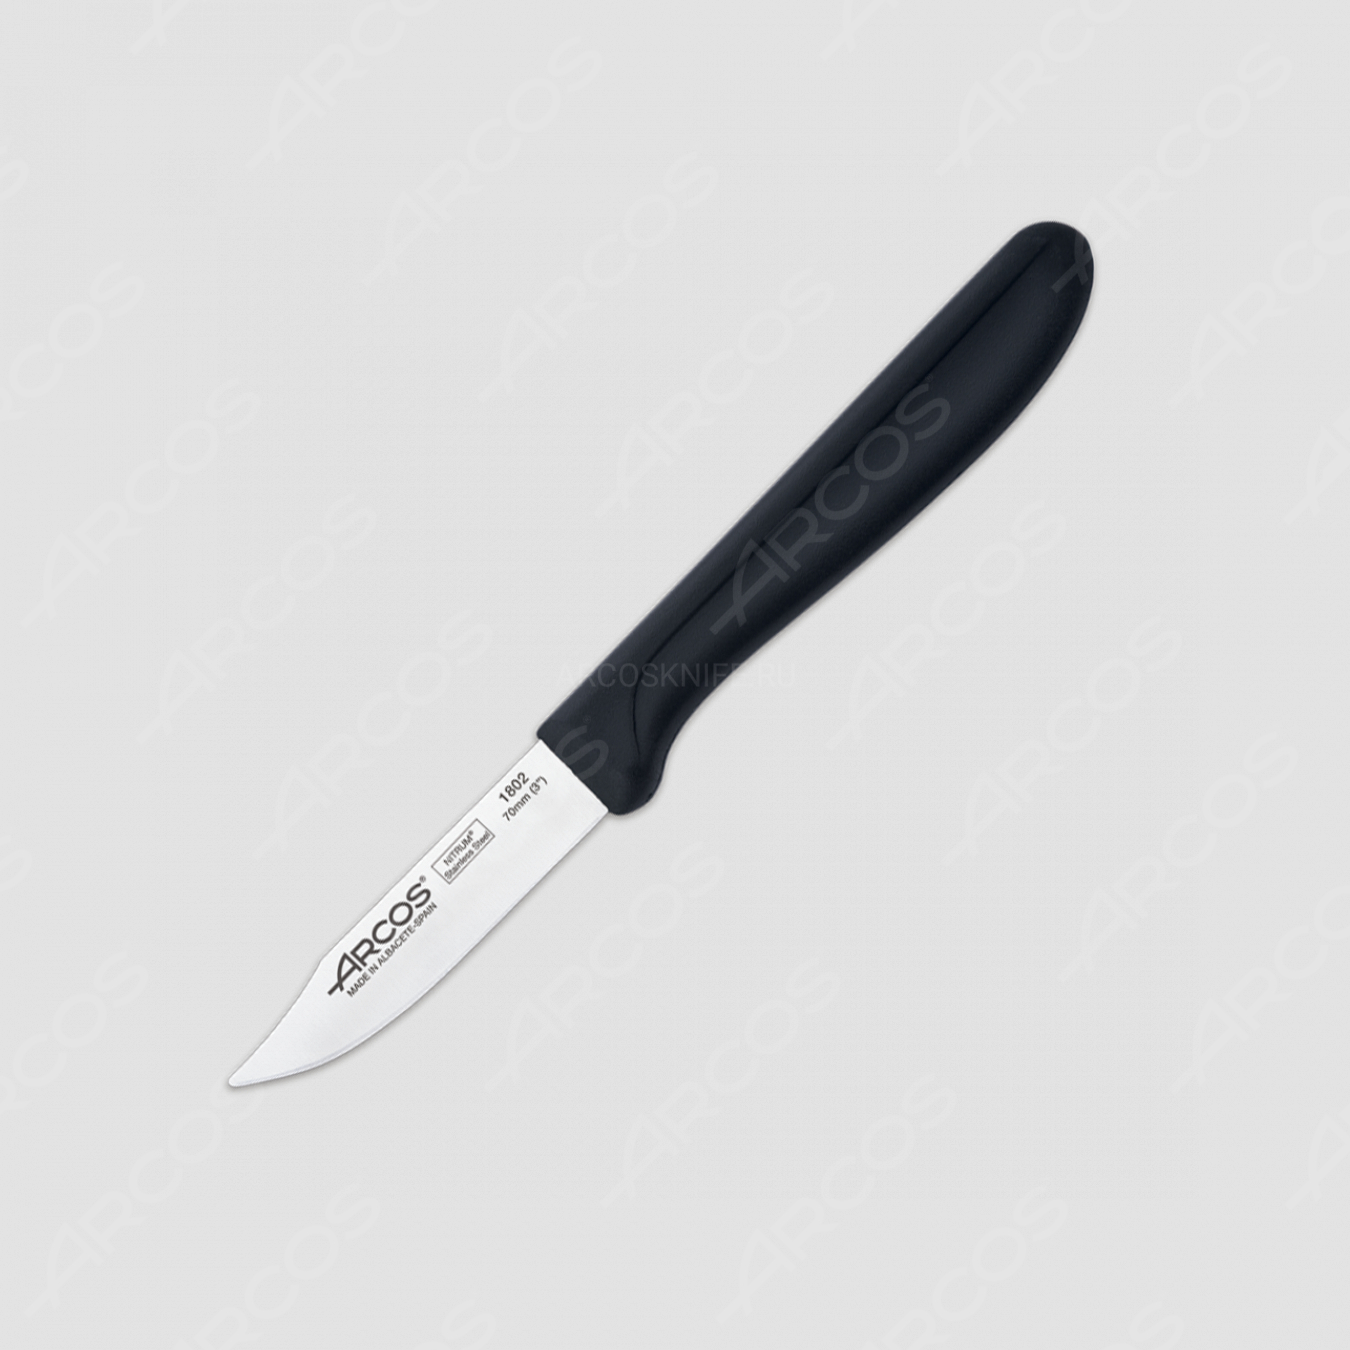 Нож кухонный для чистки 7 см, рукоять черная, серия Genova, ARCOS, Испания